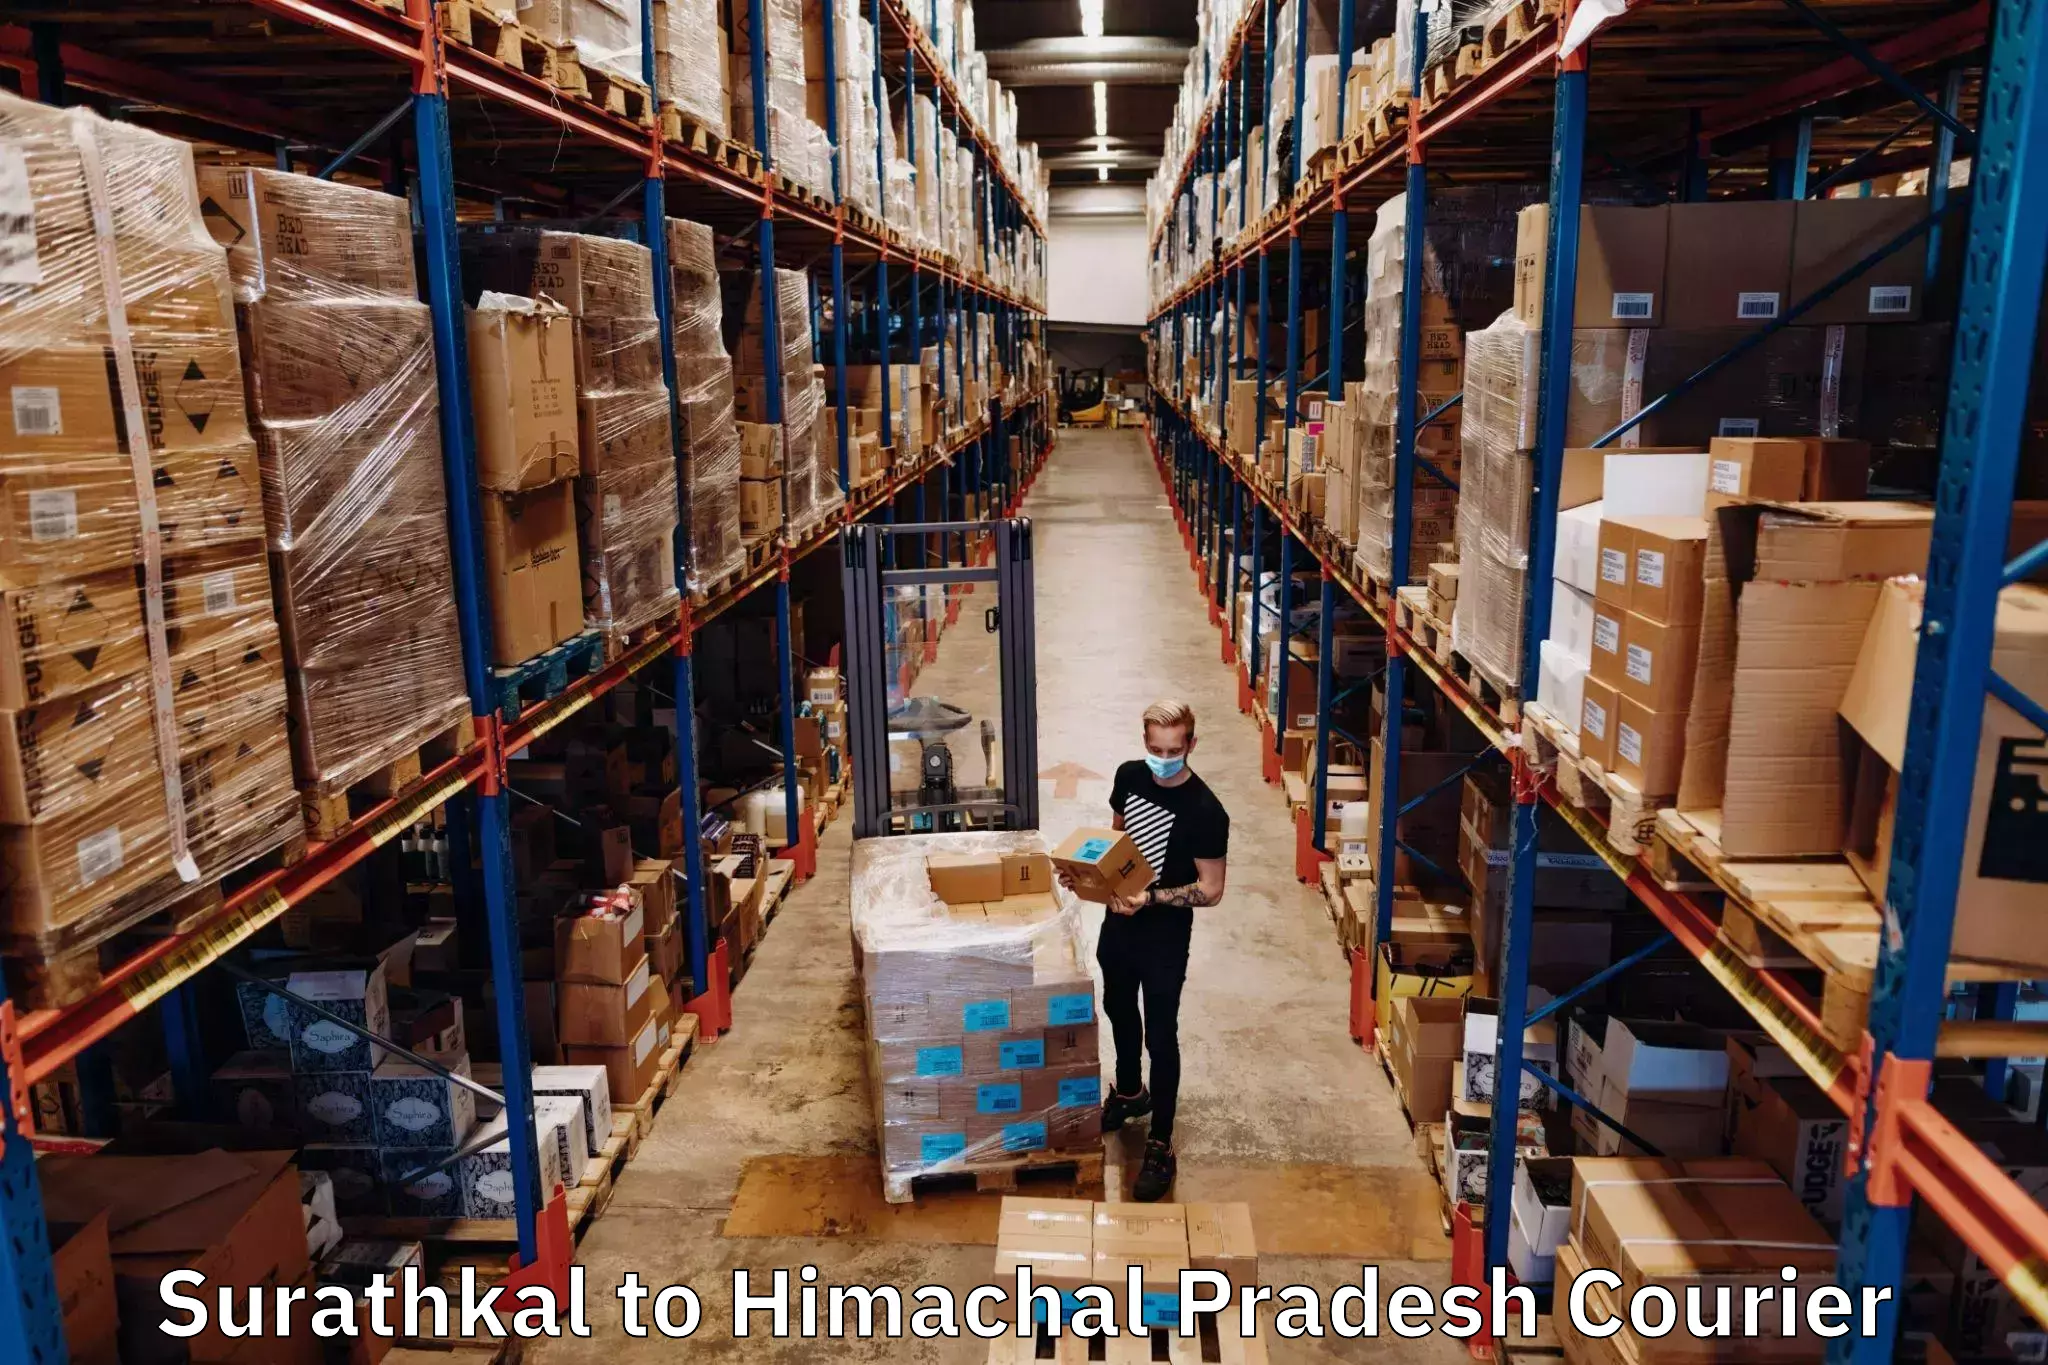 Multi-city courier Surathkal to Una Himachal Pradesh